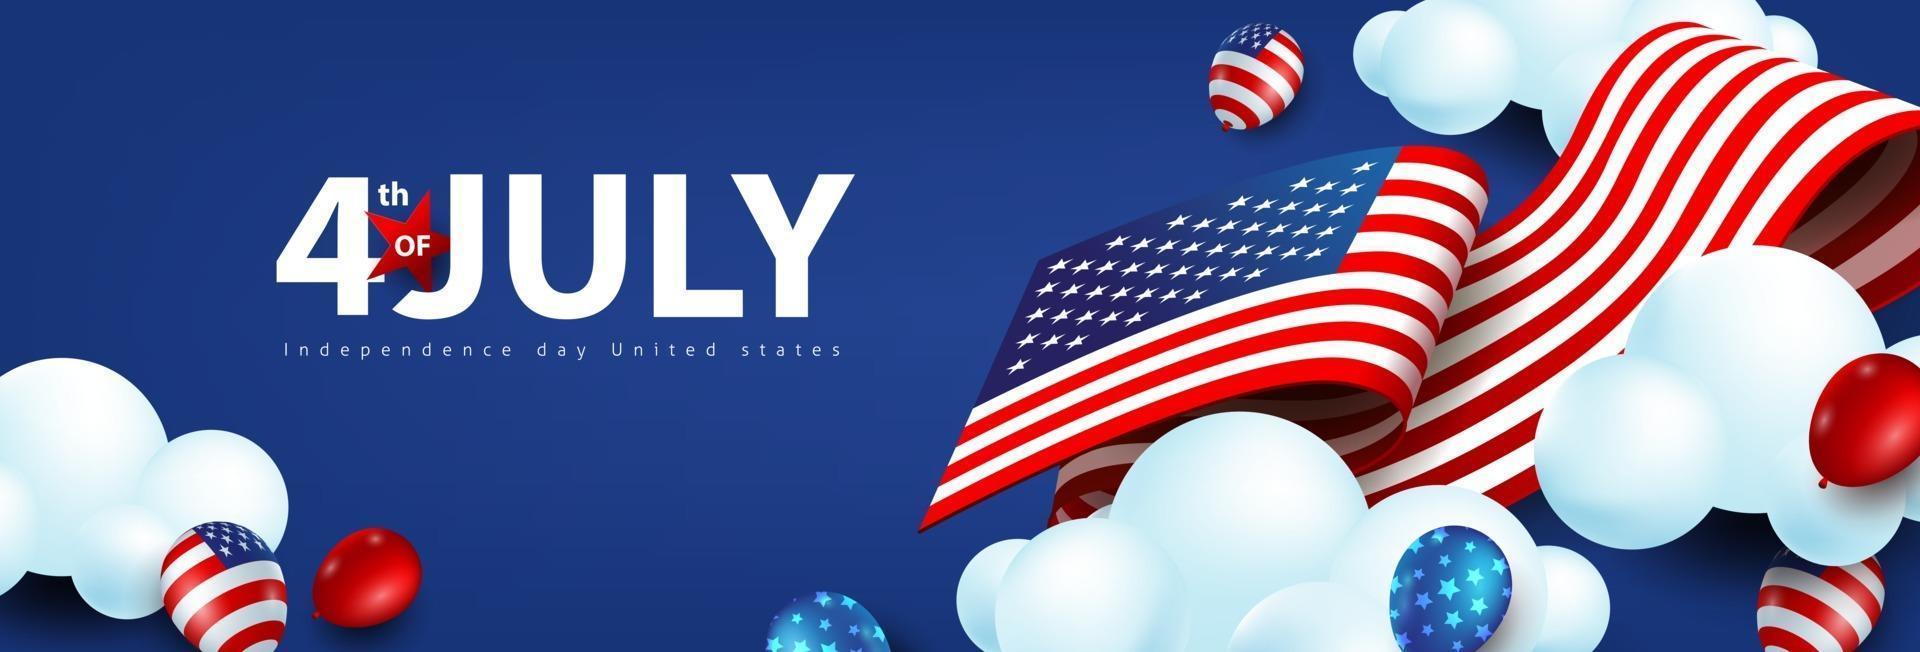 bannière de célébration de la fête de l'indépendance des états-unis avec des ballons américains et le drapeau des états-unis. vecteur